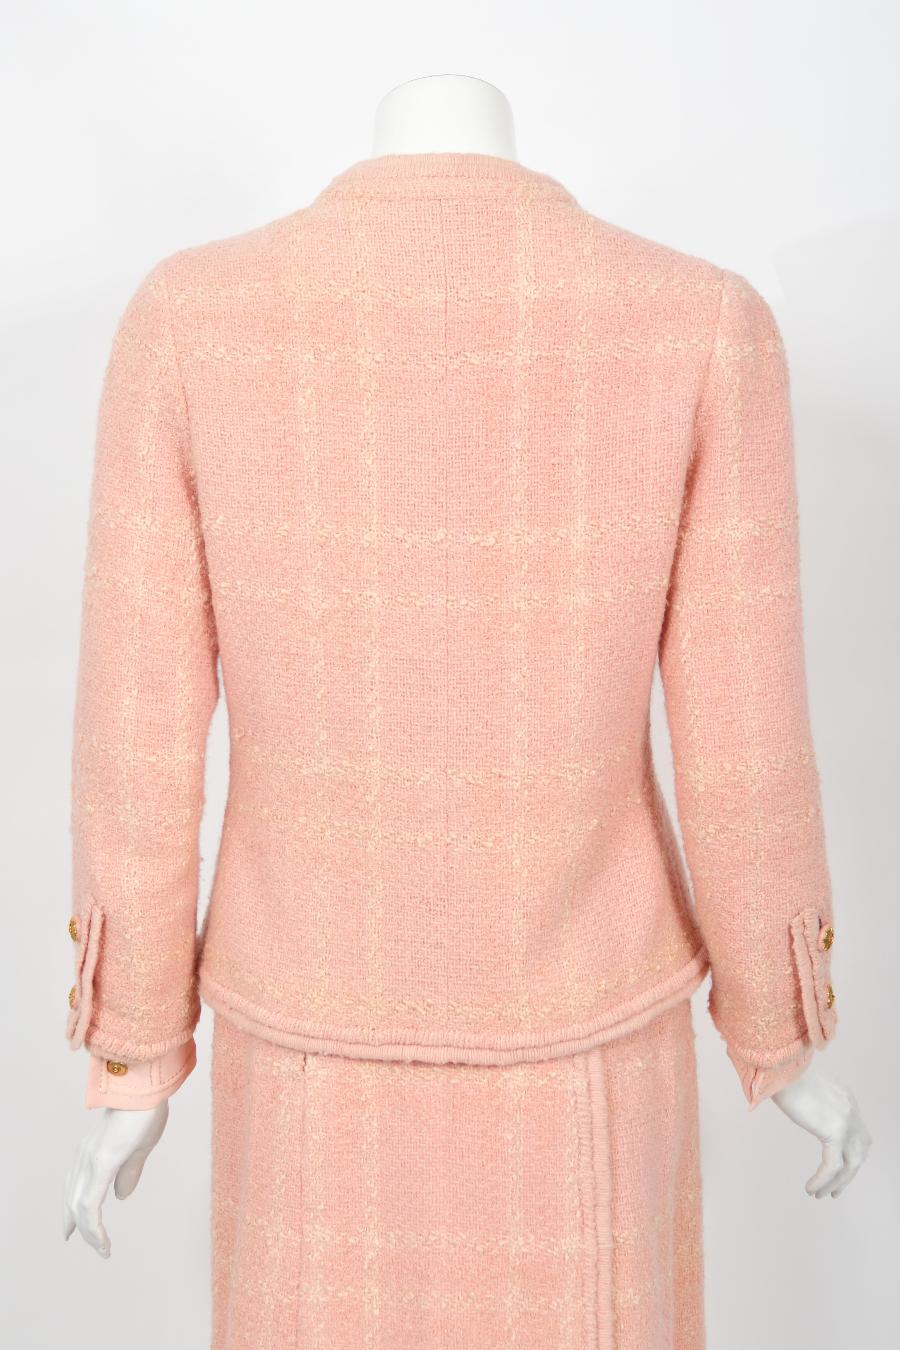 Chanel Haute Couture documenté veste chemisier jupe chemisier en laine rose vintage 1973 en vente 13